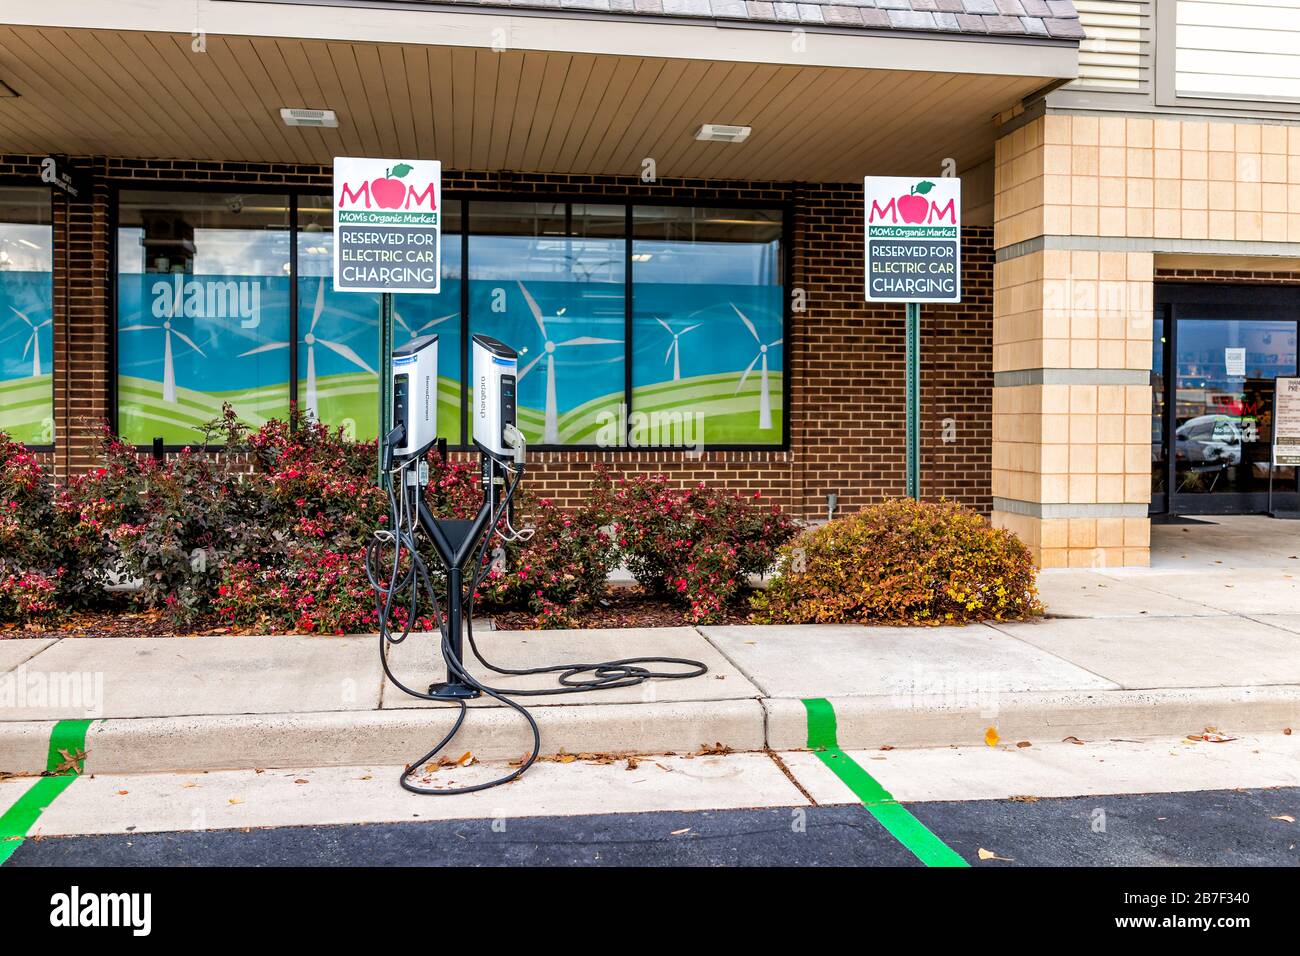 Herndon, EE.UU. - 12 de noviembre de 2019: Estacionamiento de fachada exterior y carga de coche eléctrico de la tienda Mom's Organic Market con productos frescos de granja en el plato Foto de stock